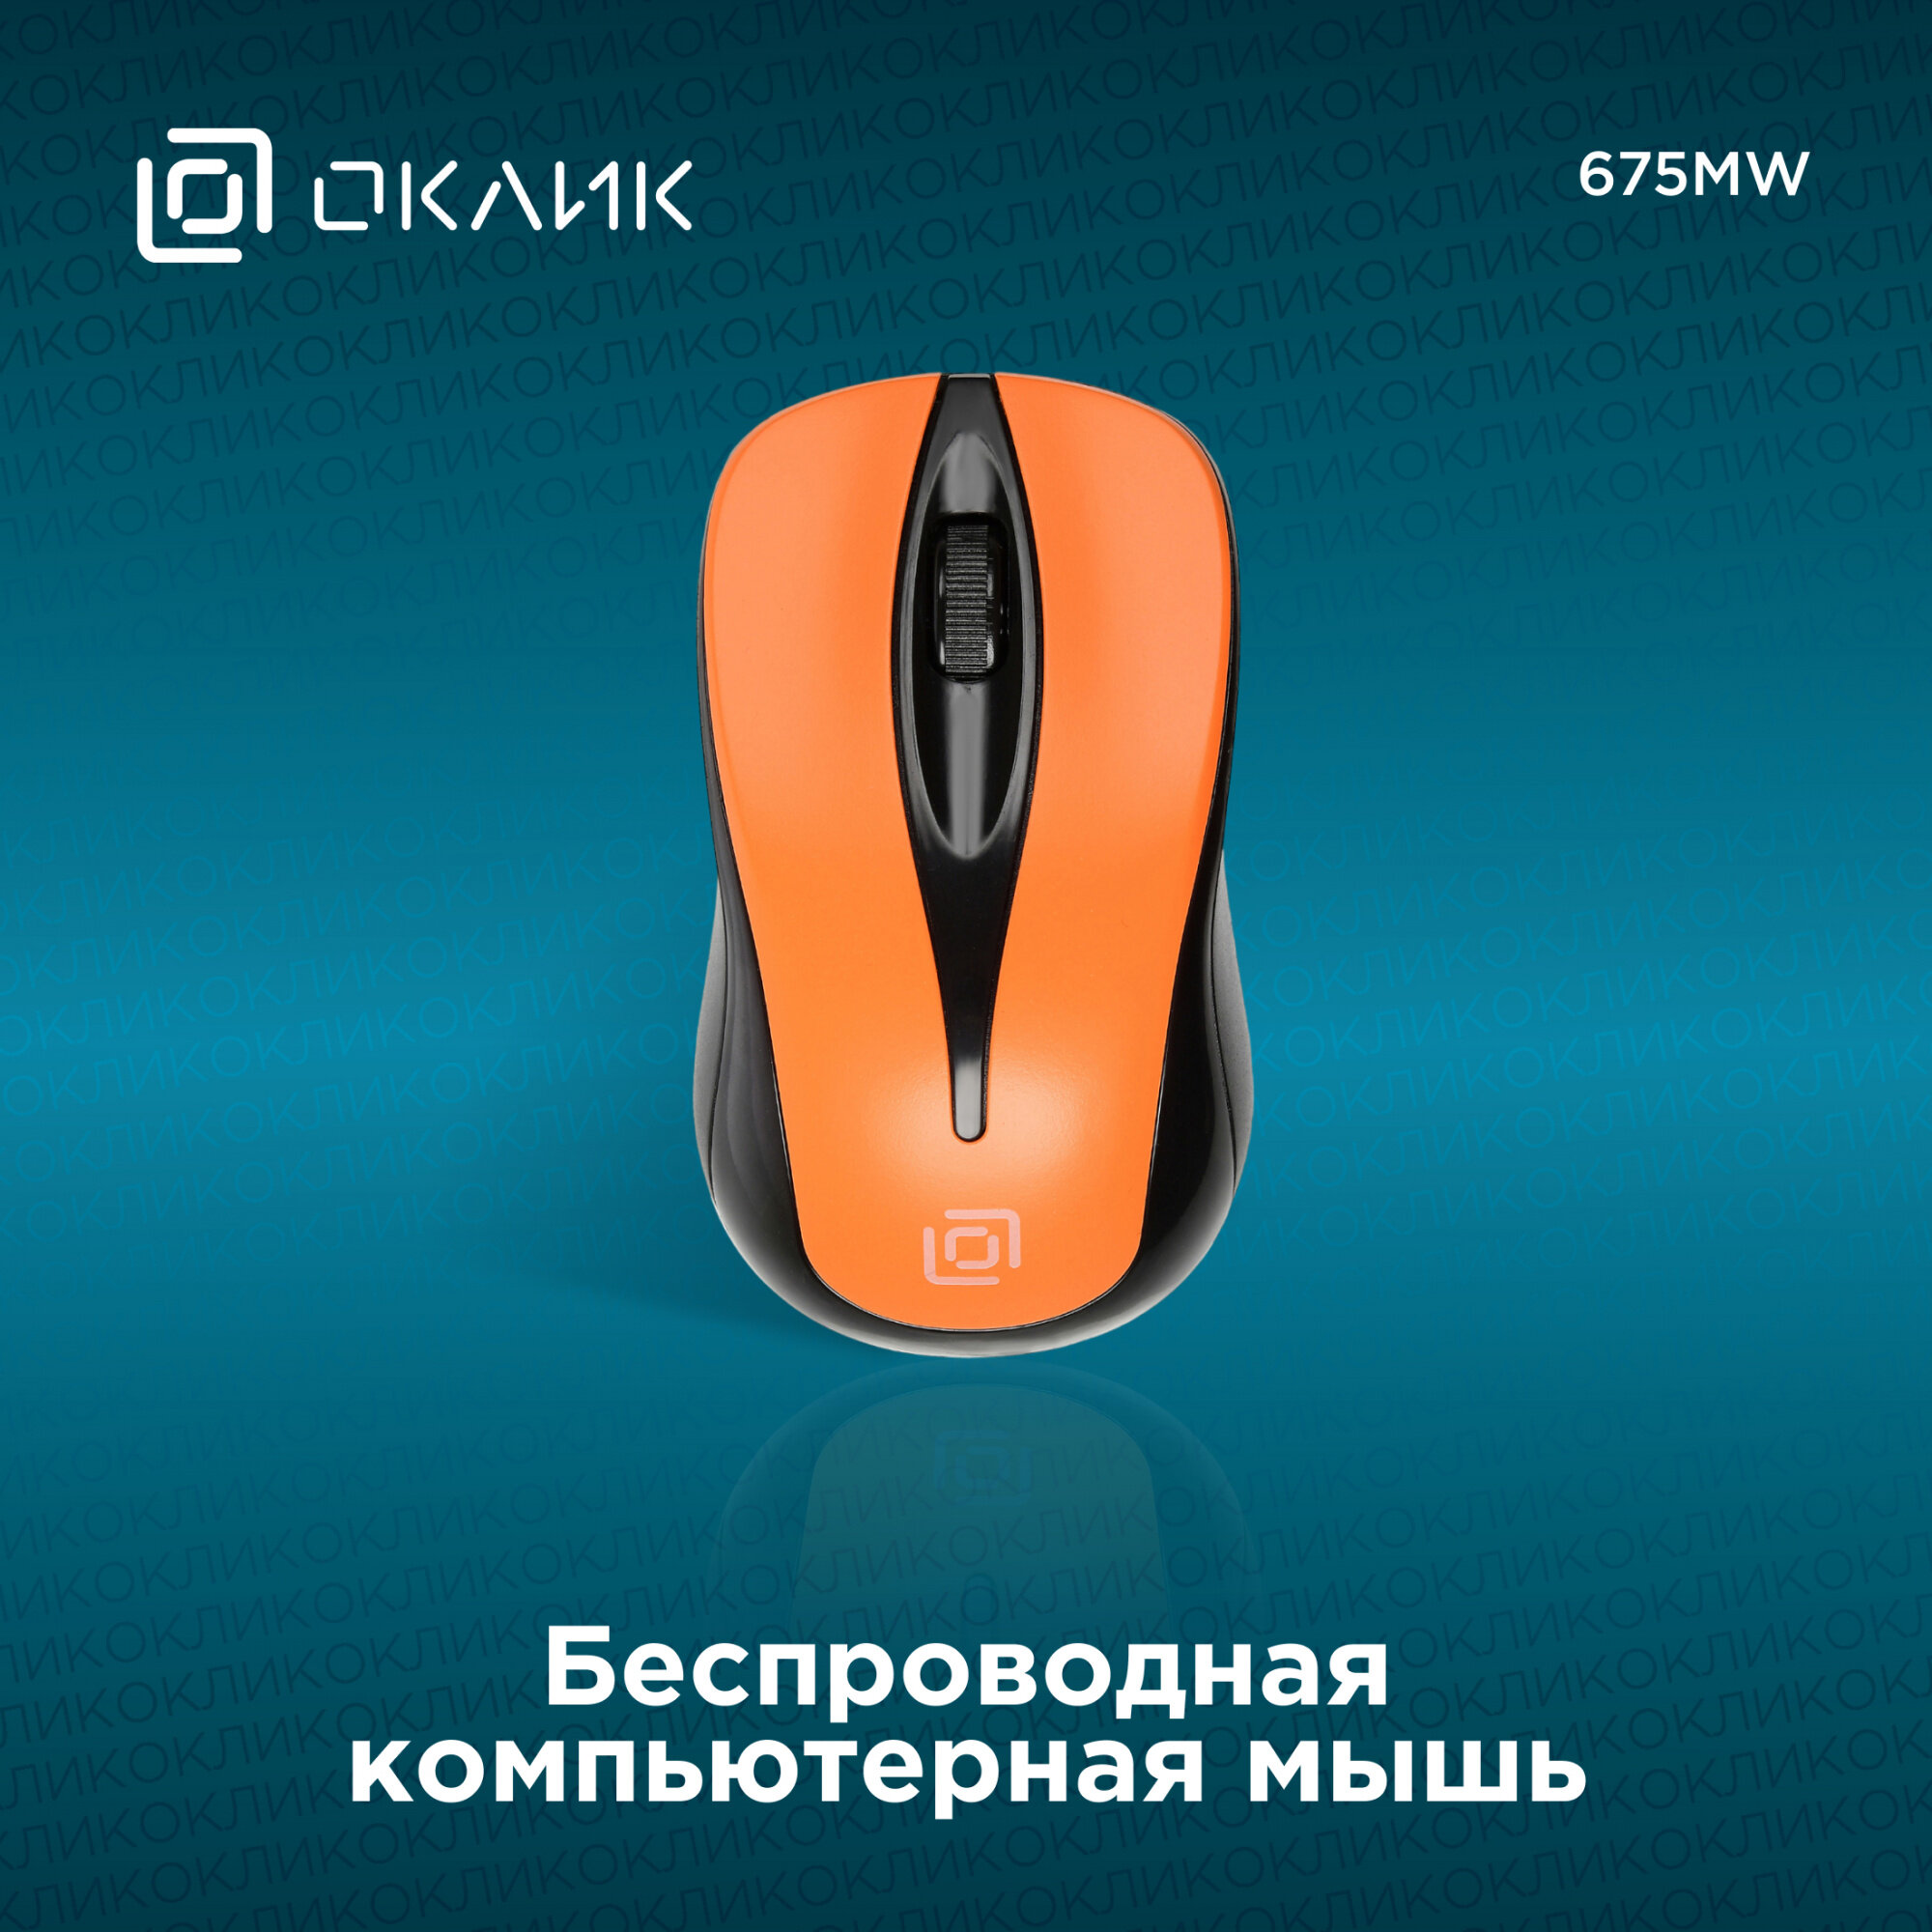 Мышь OKLICK 675MW оптическая беспроводная USB, черный и оранжевый - фото №8